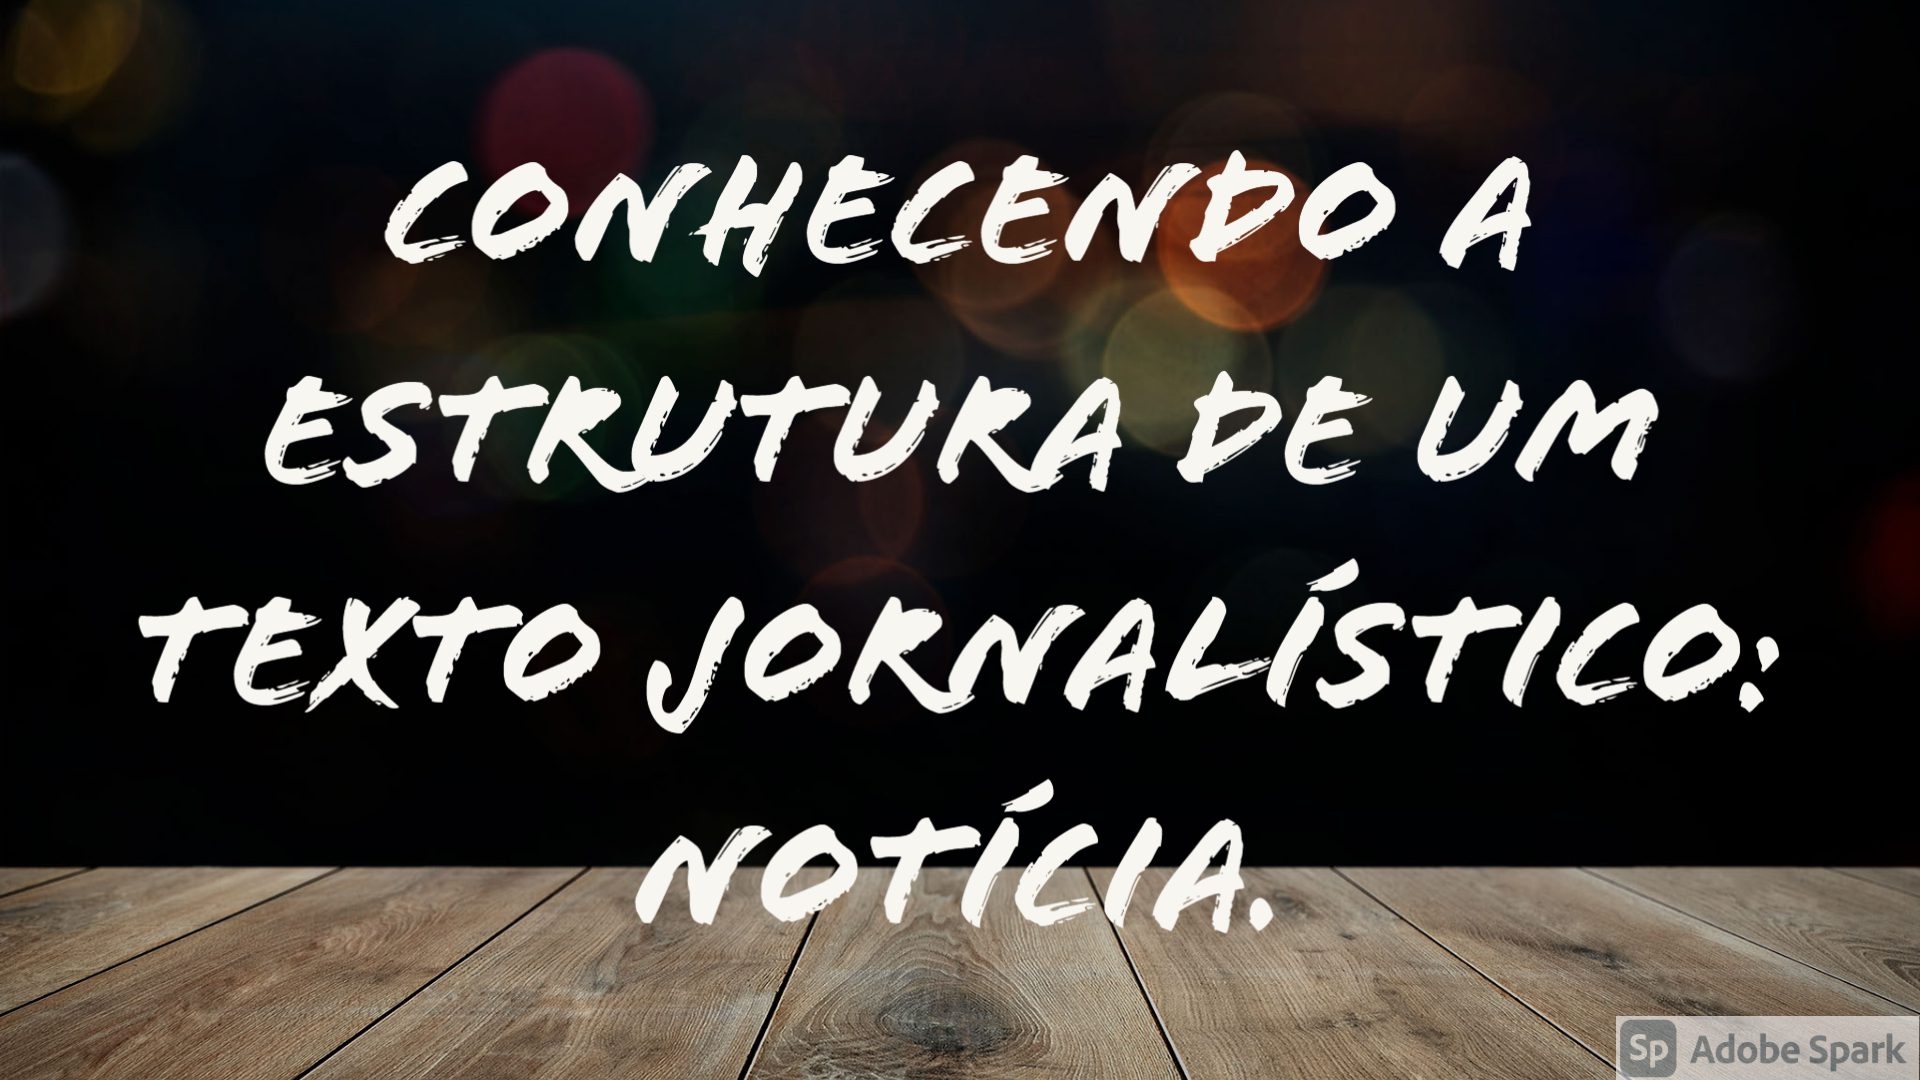 You are currently viewing Língua Portuguesa – Conhecendo a estrutura de um texto jornalístico: notícia.